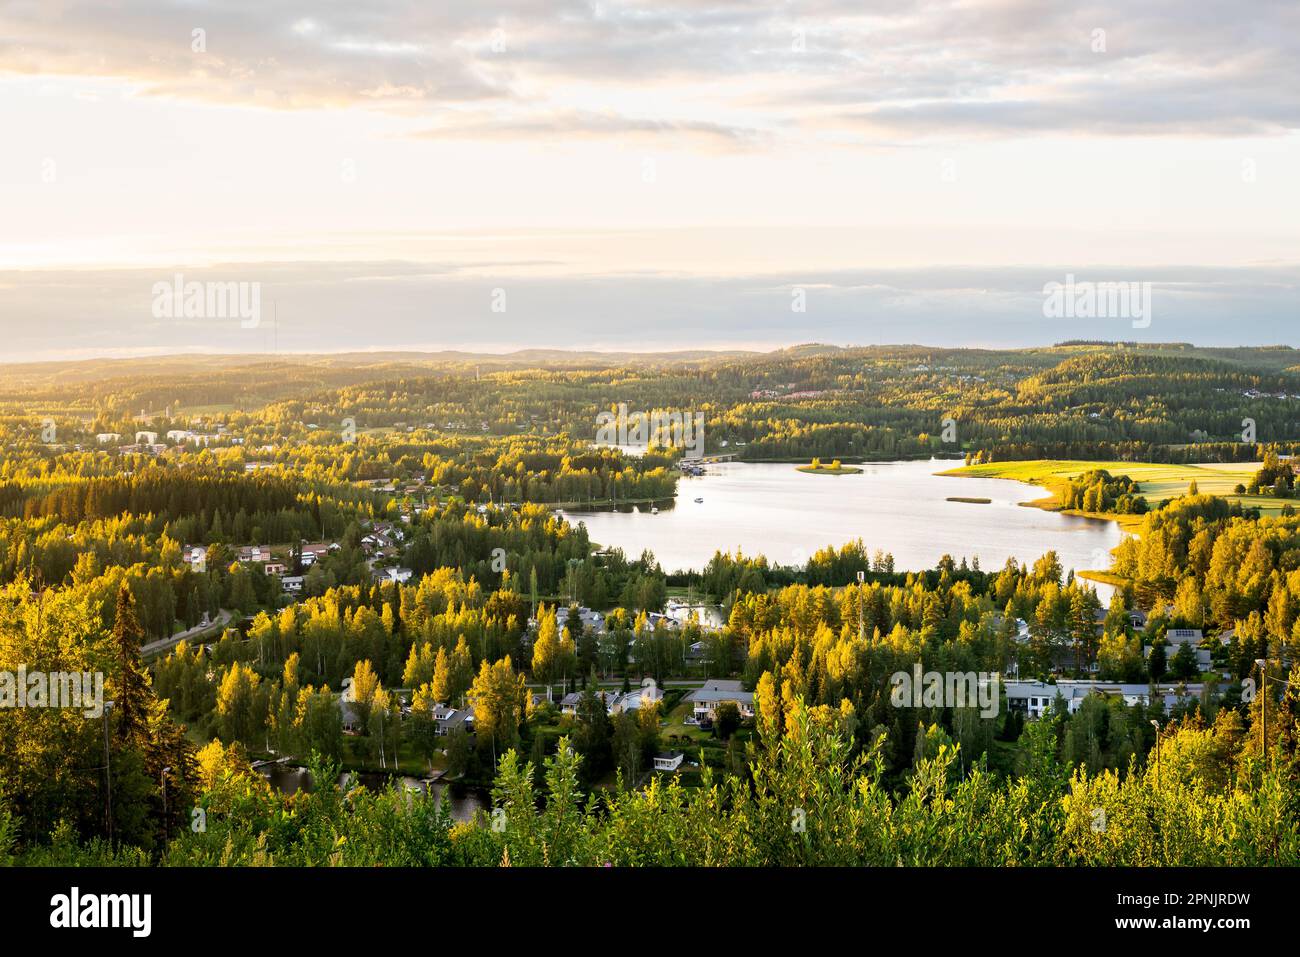 Foresta e lago in Finlandia. Natura finlandese in estate. Bellissimo paesaggio e vista aerea della città al tramonto. Paesaggio nordico all'aperto. Foto Stock